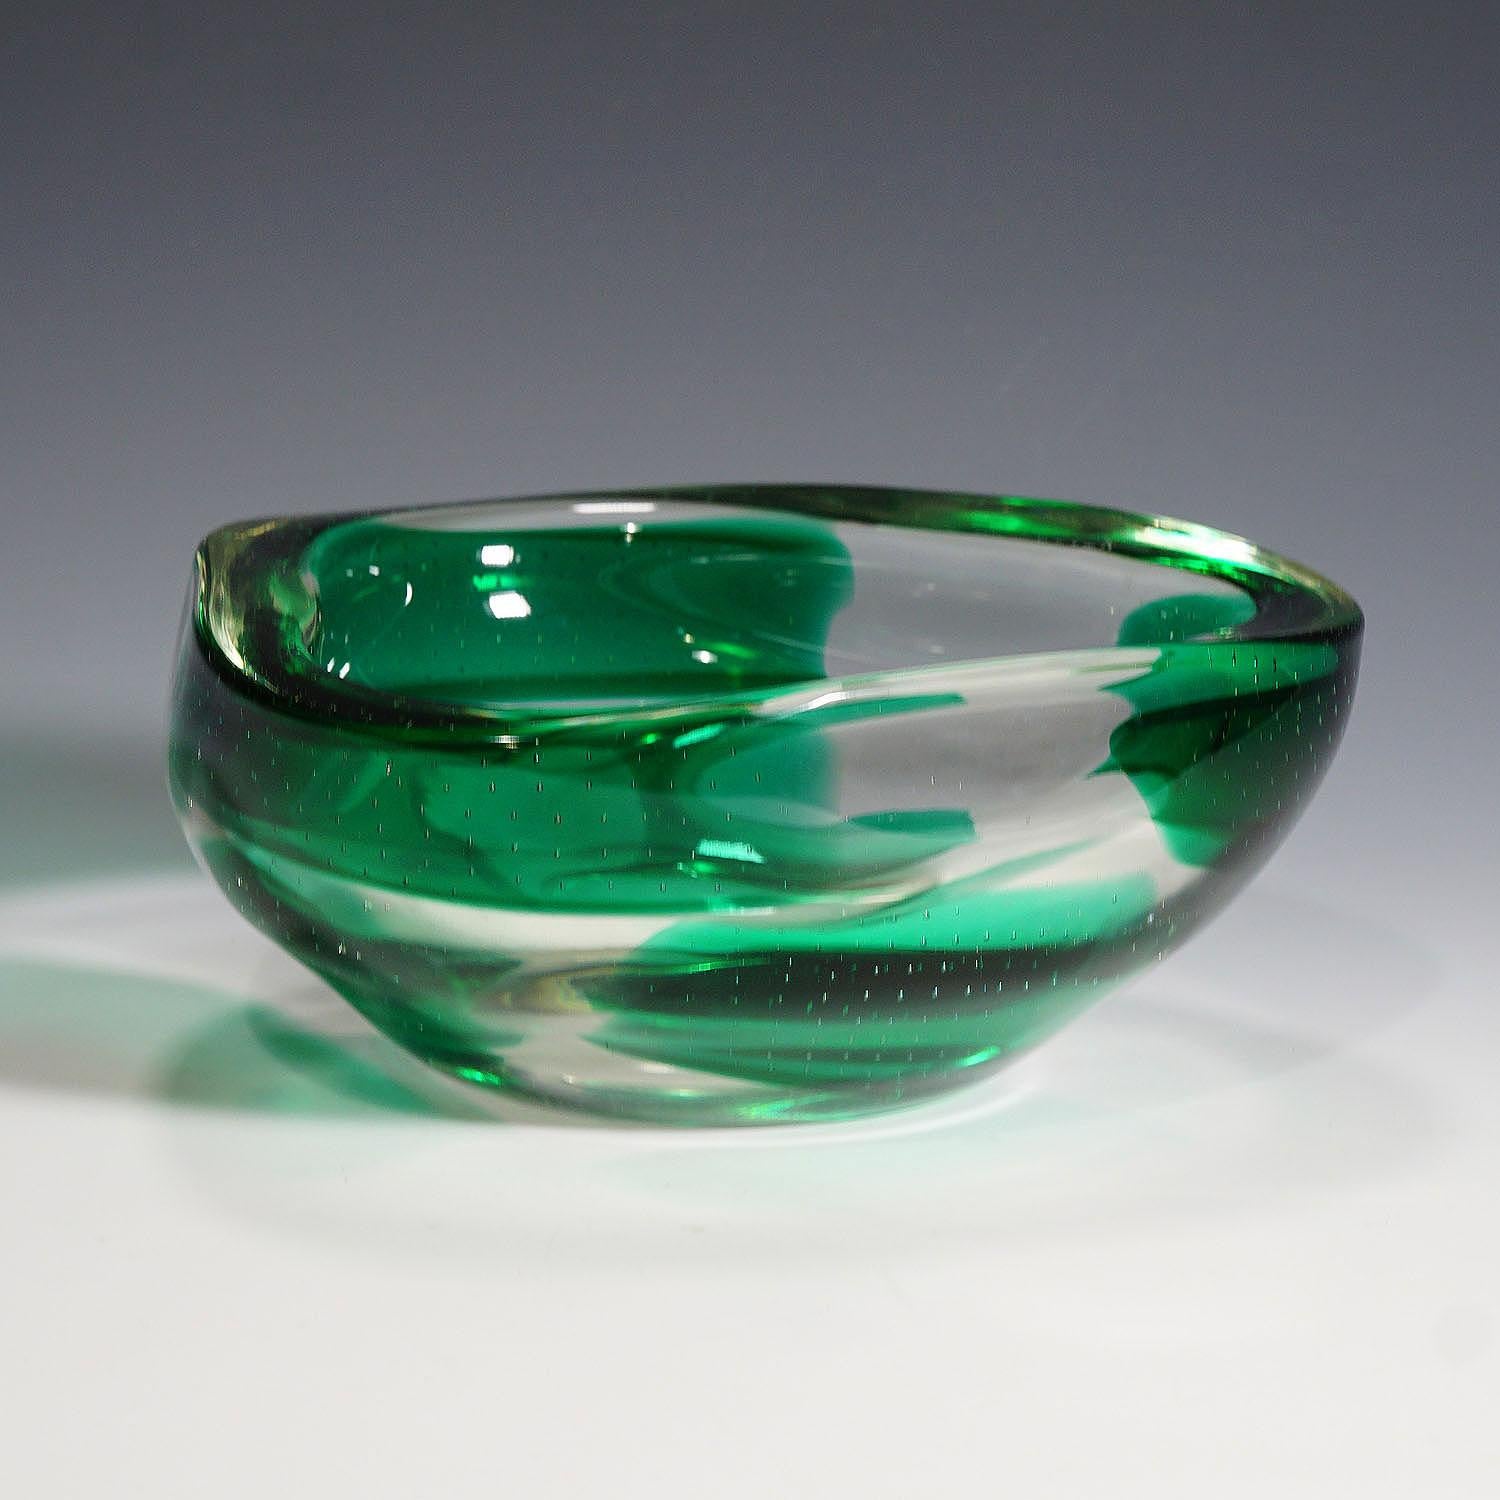 Eine große venezianische Sommerso-Glasschale, entworfen von Dino Martens und hergestellt von Aureliano Toso in den 1940er Jahren. Dickes klares Glas mit rechteckigen grünen Flecken und Blasenbereichen.

Maße: Höhe 8,6 cm (3,39